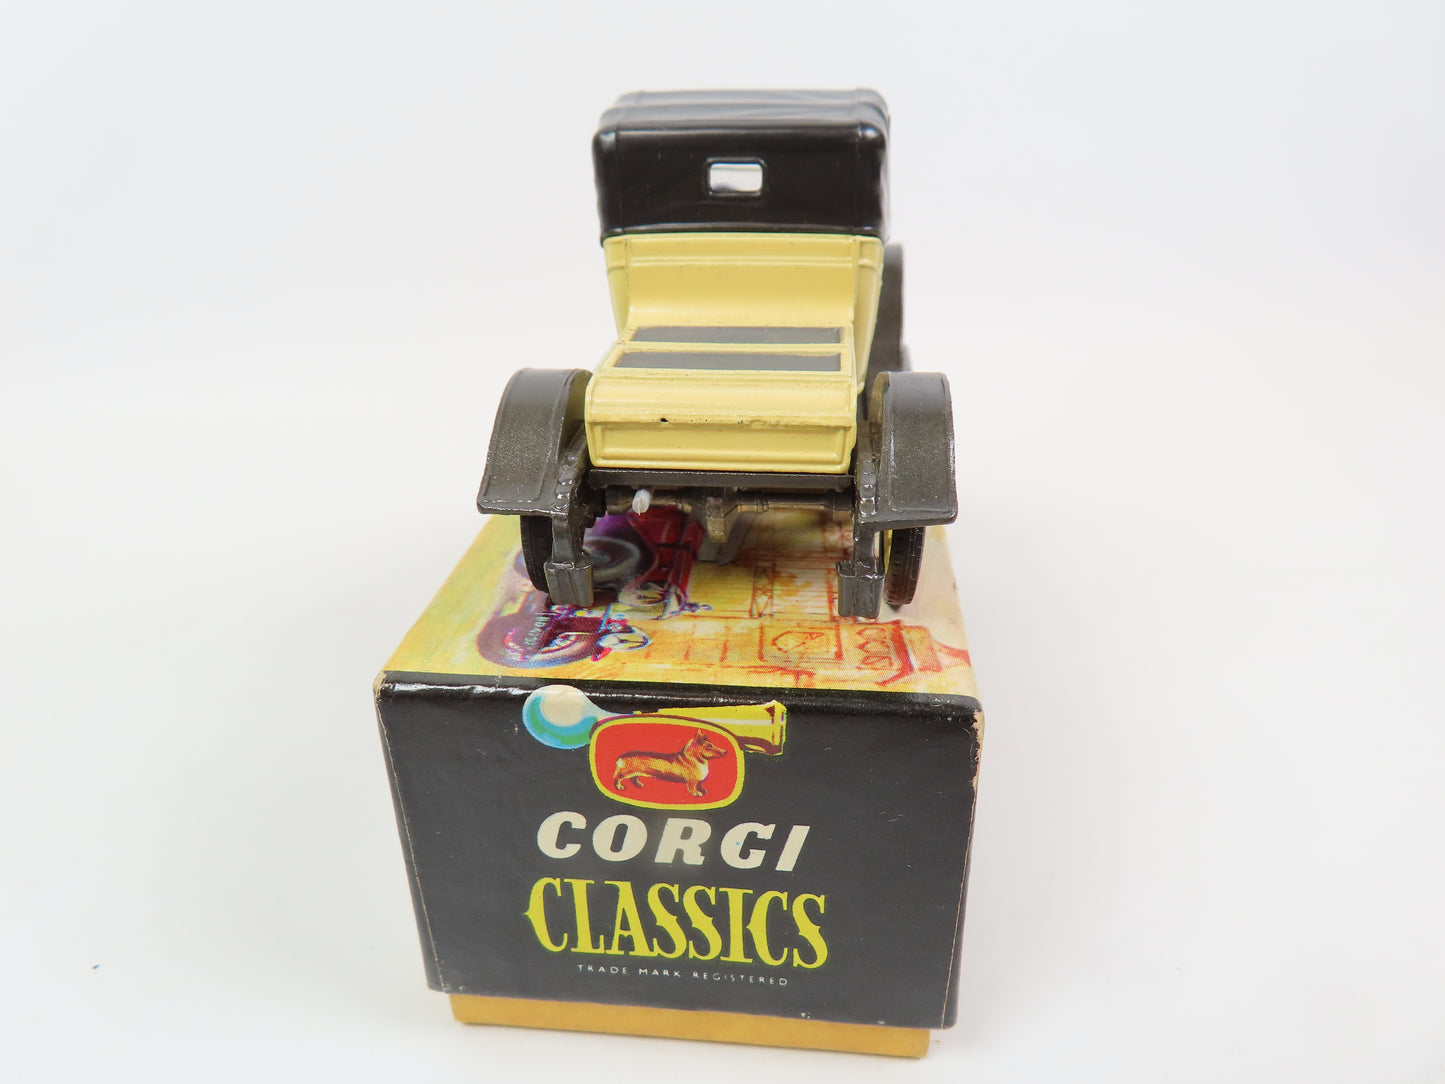 Corgi Classics 9032  - 1910 Renault - Lemon/black - Very near mint boxed.